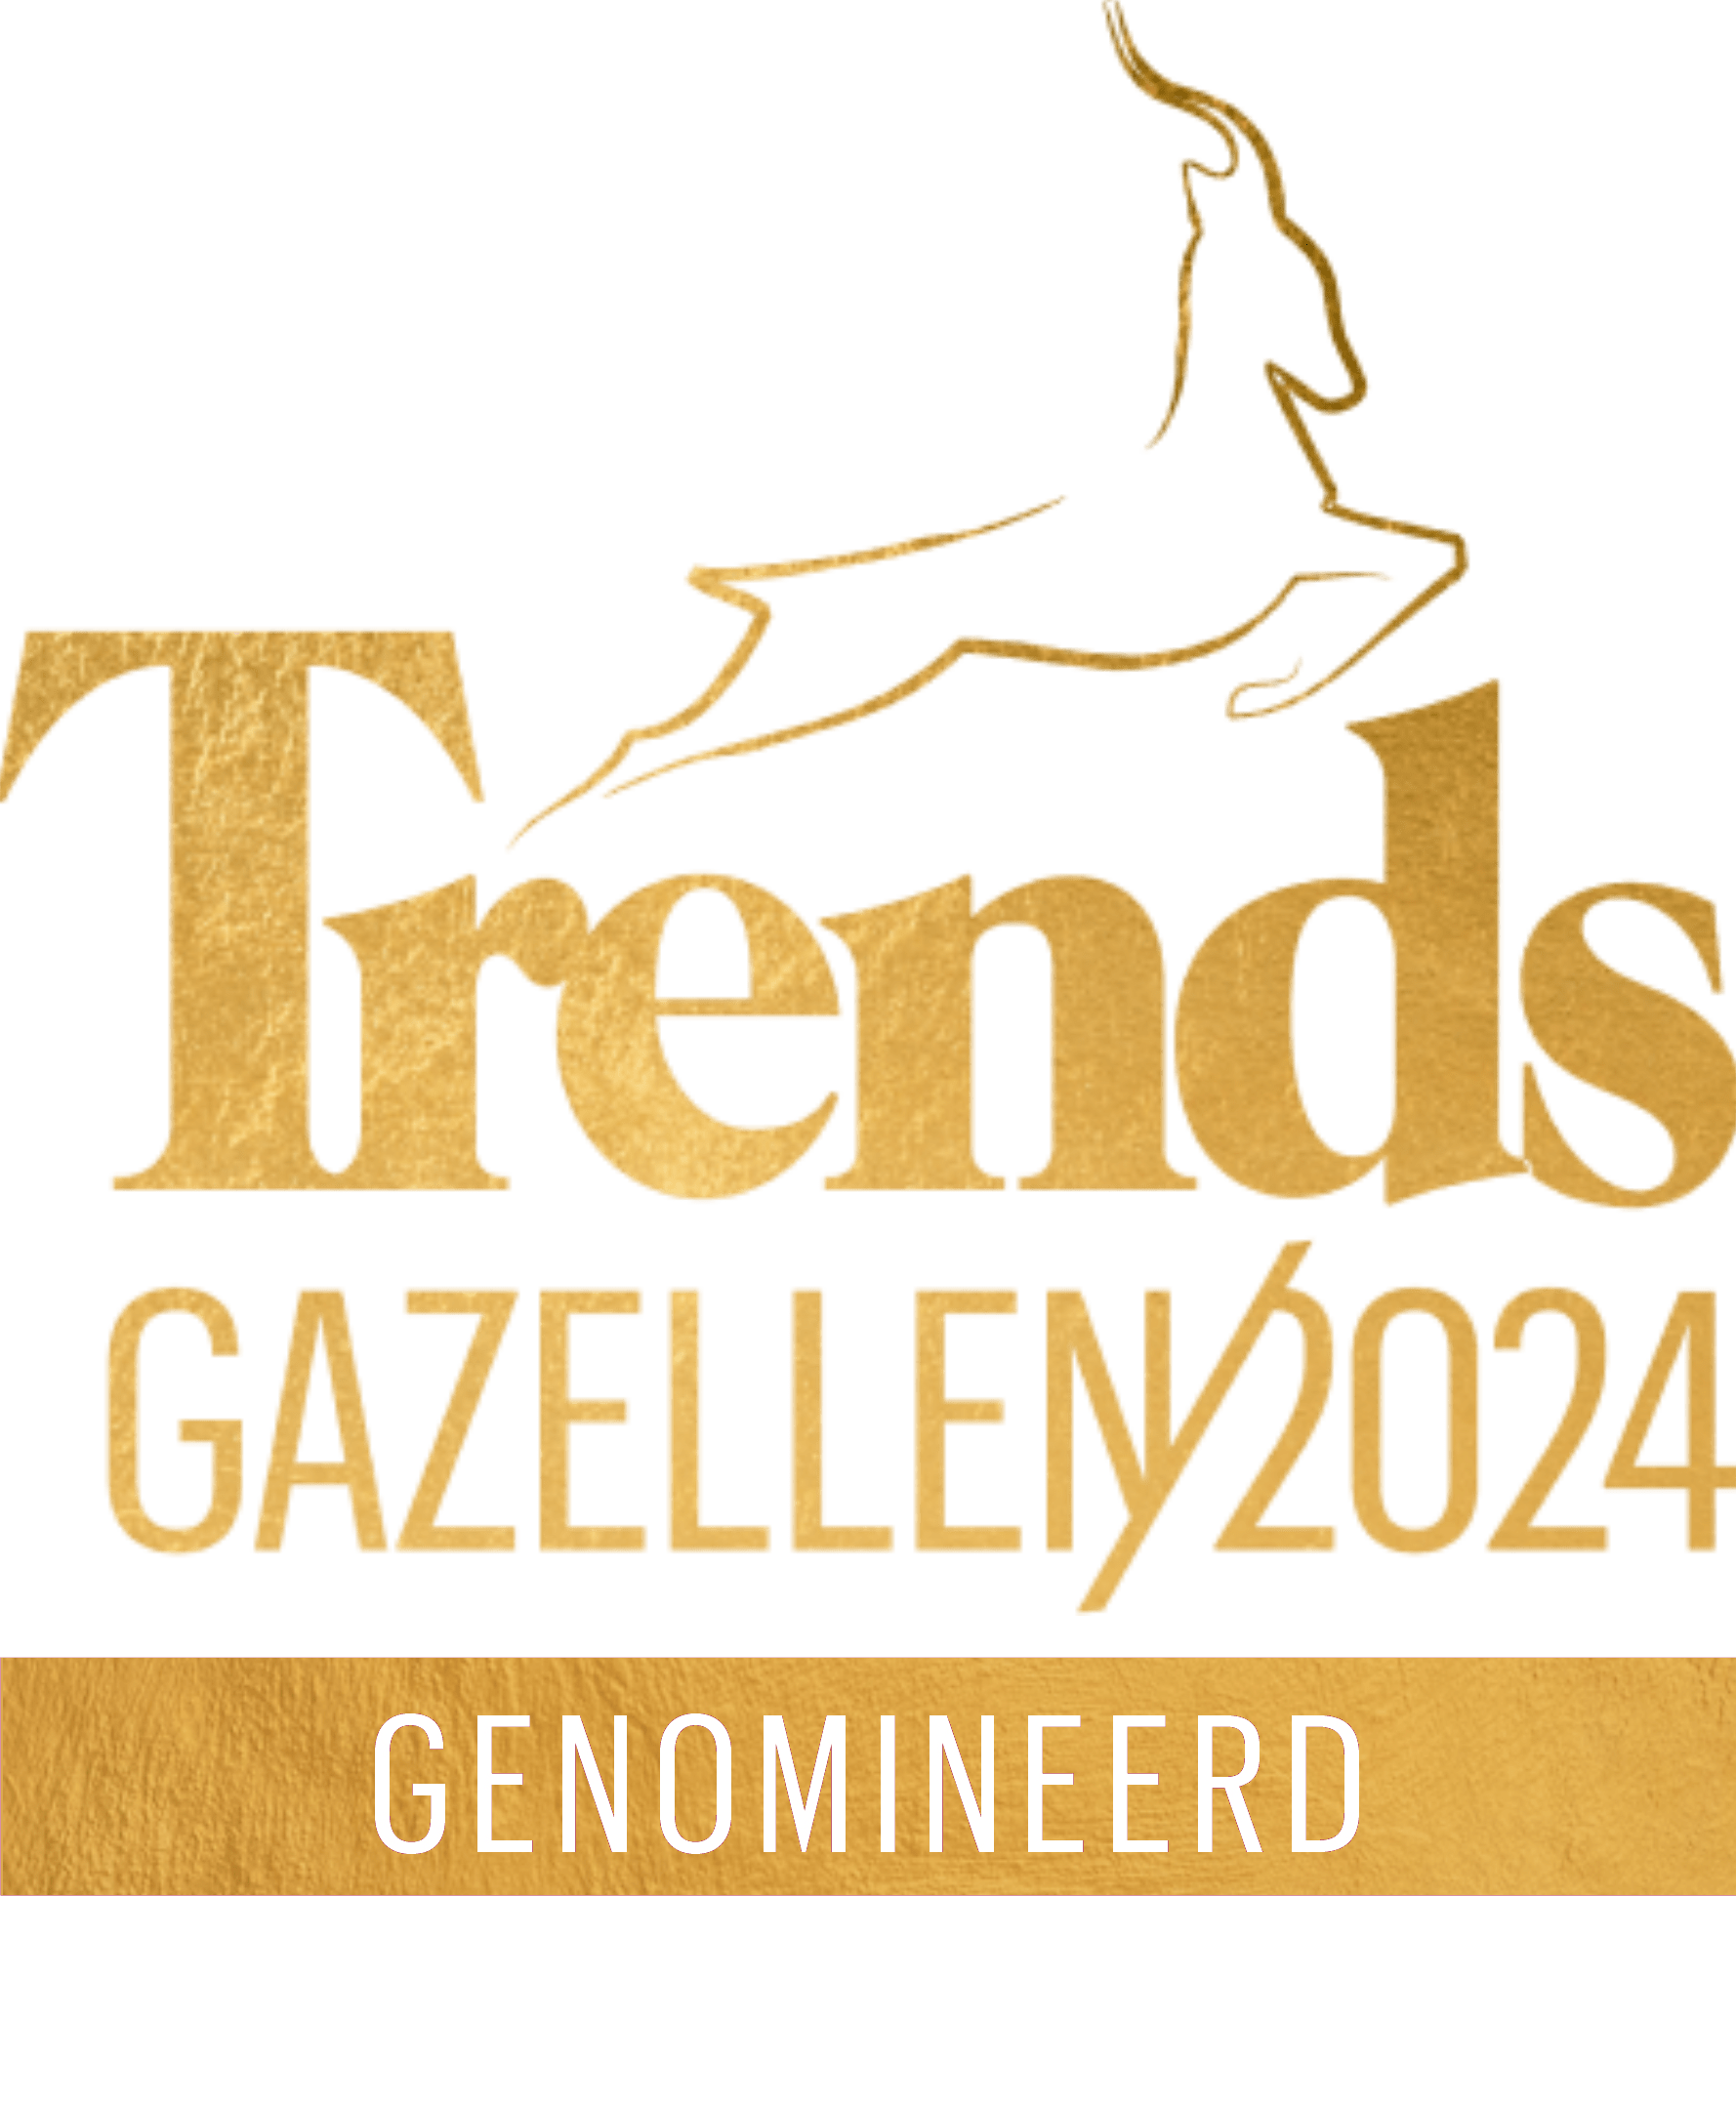 trends_gazellen_gold_2024_NL